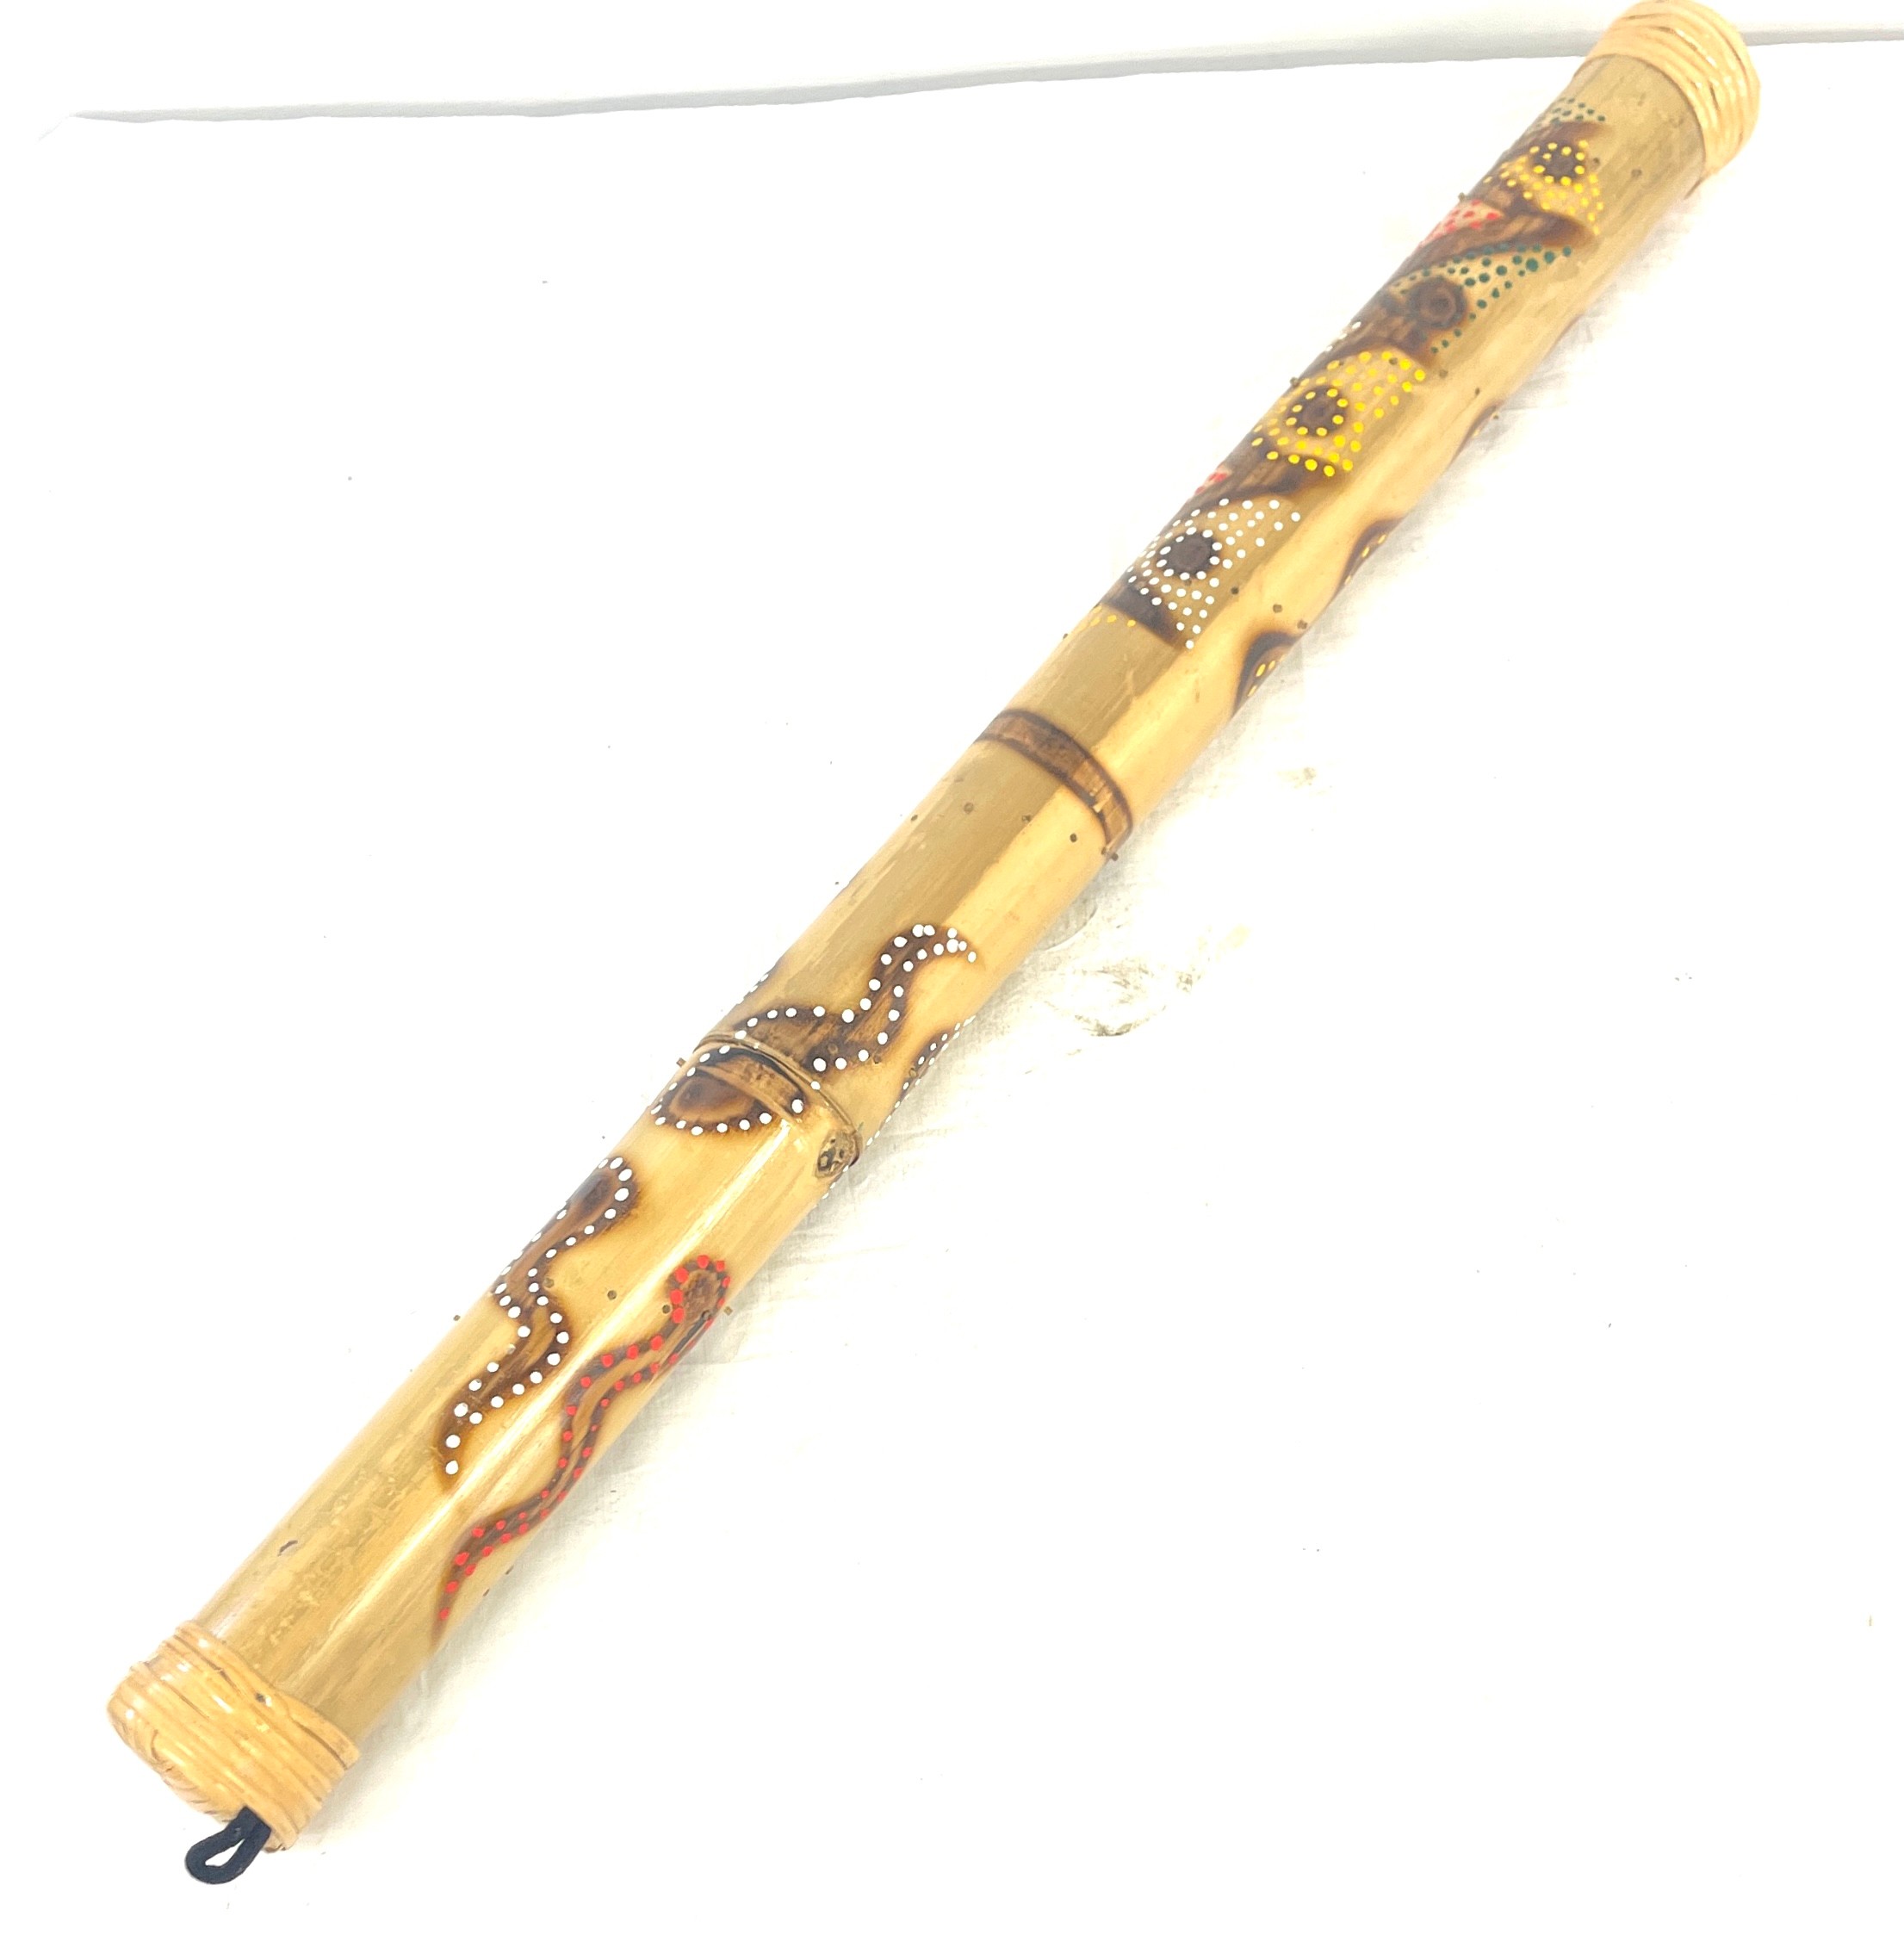 Bamboo rain stick